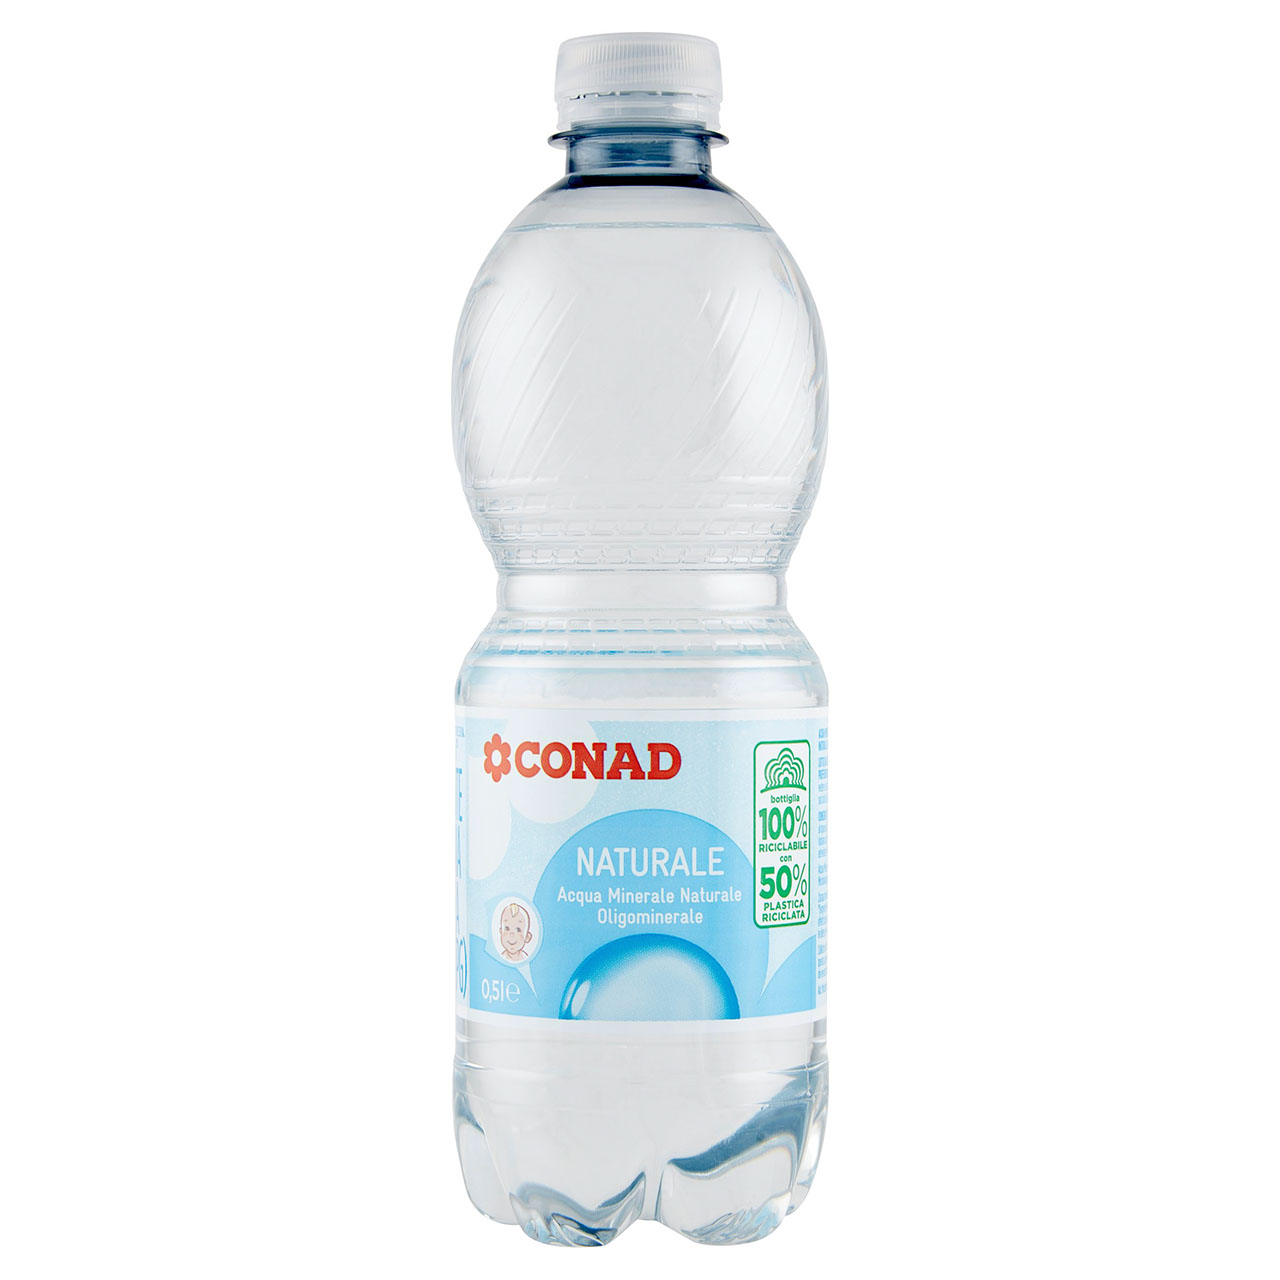 Acqua Minerale Naturale Conad in vendita online